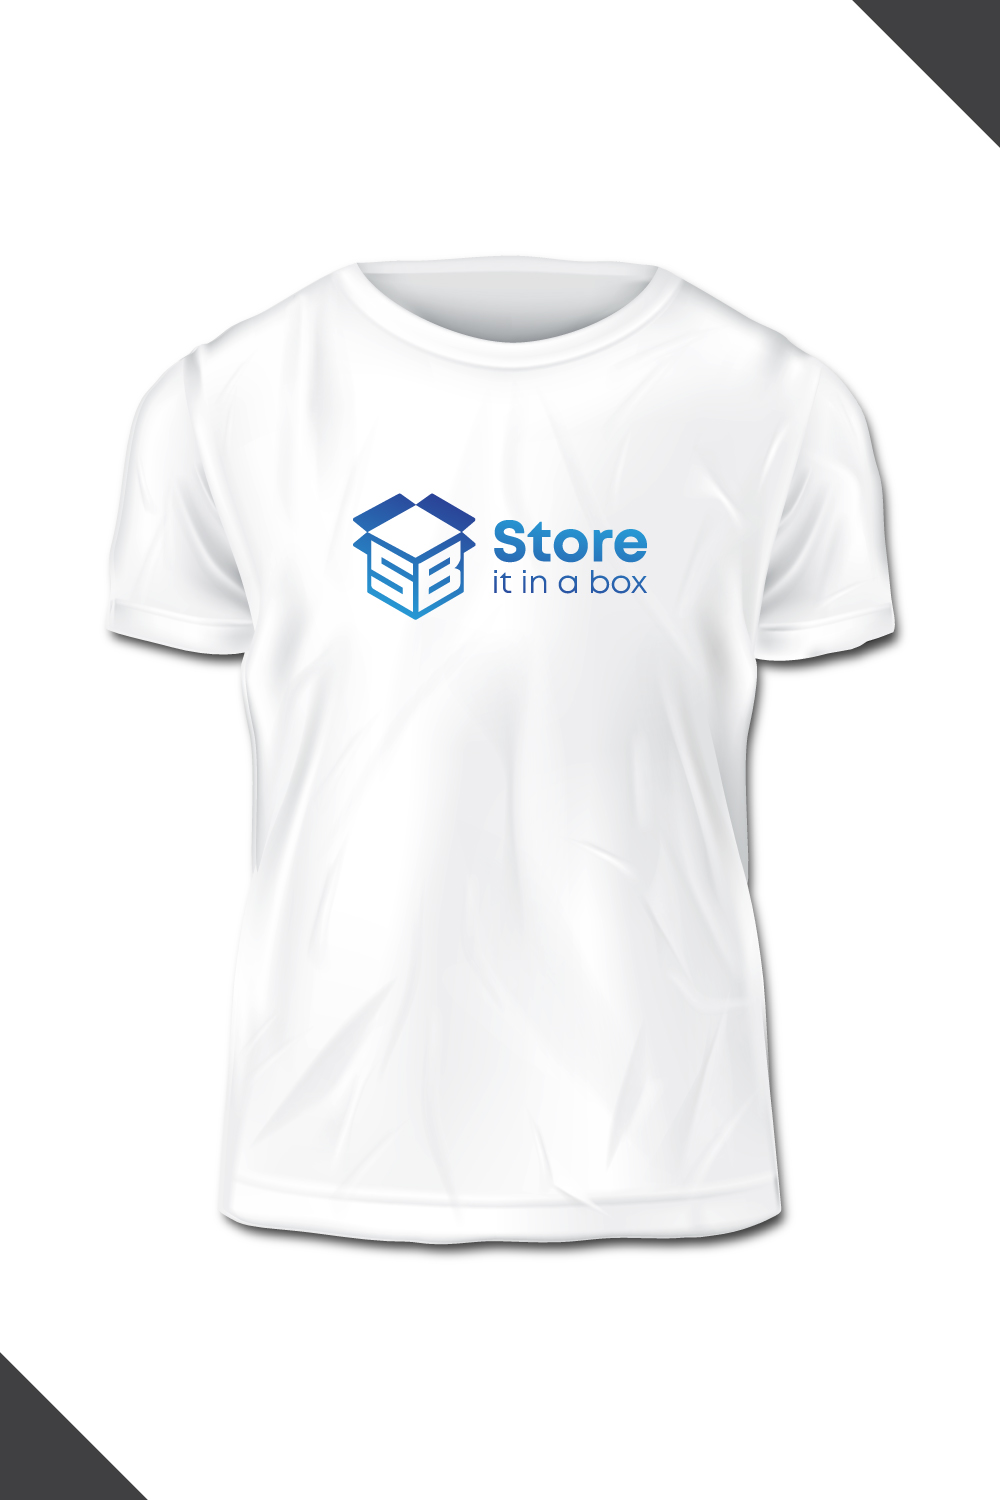 SB Store box logo pinterest preview image.